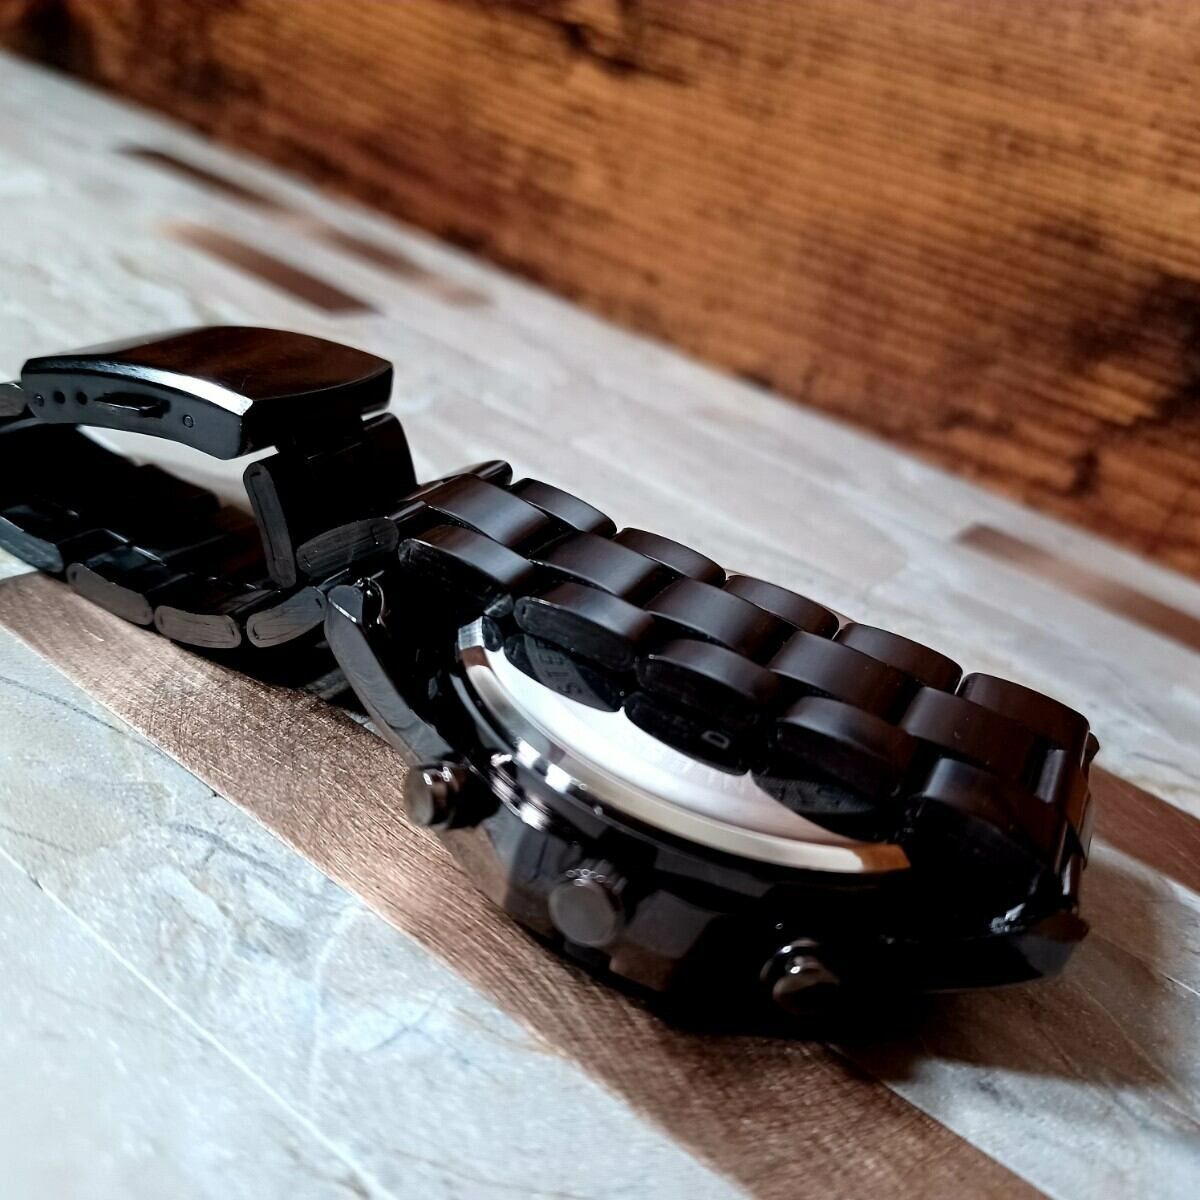 BINBOND 新品 カレンダー機能付き★スケルトン ラグジュアリー ステンレス メンズ腕時計 黒